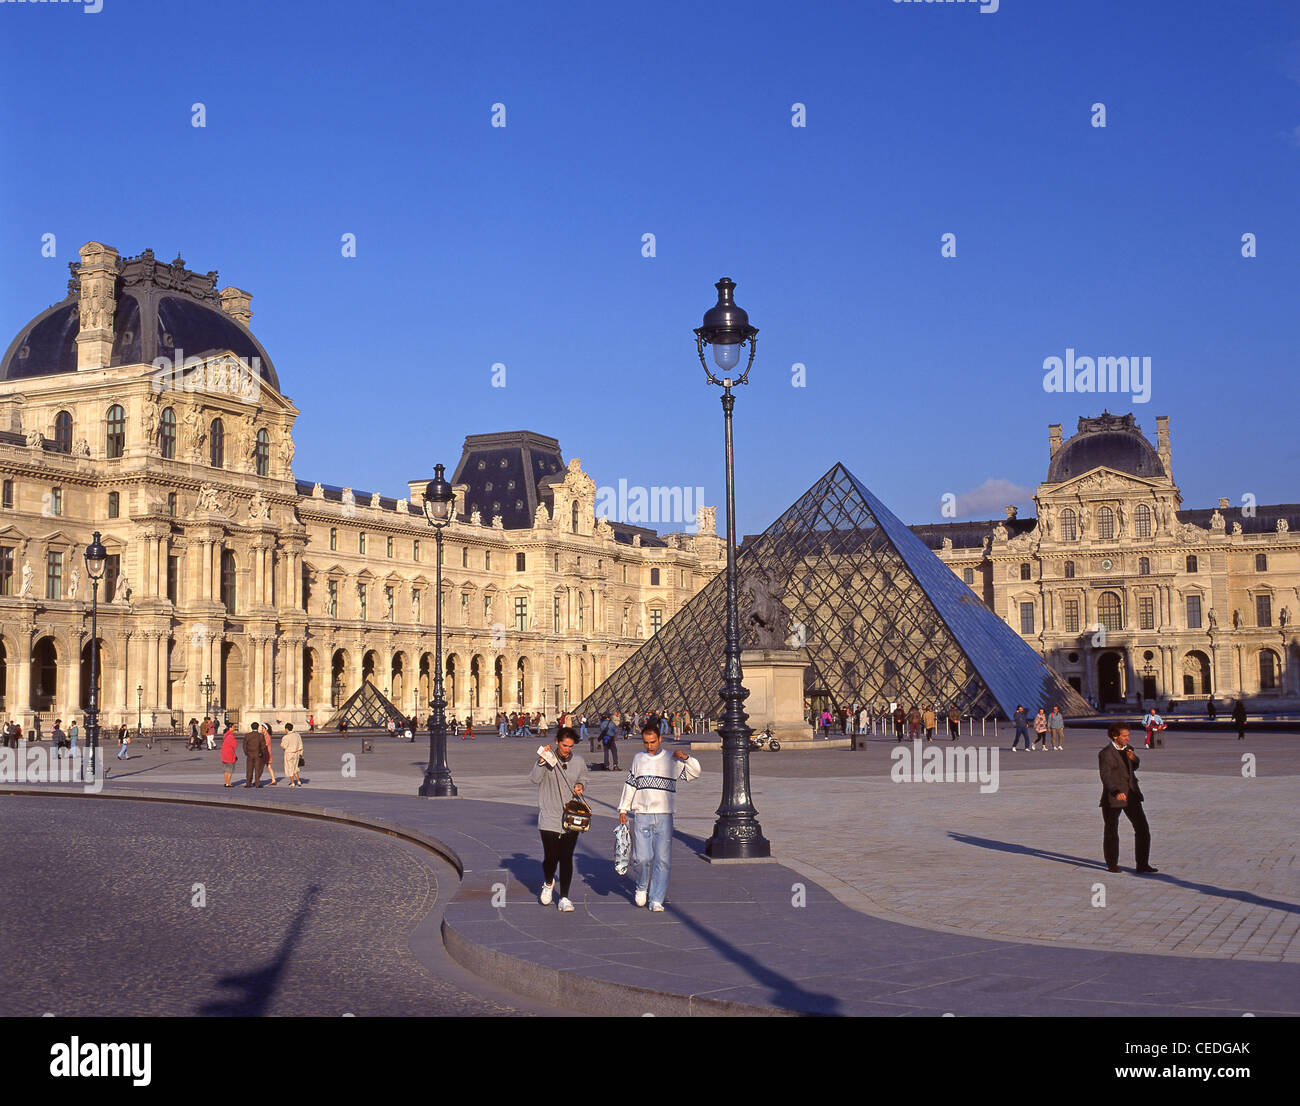 Le palais du Louvre et la Pyramide, Place du Carrousel, Paris, Île-de-France, France Banque D'Images